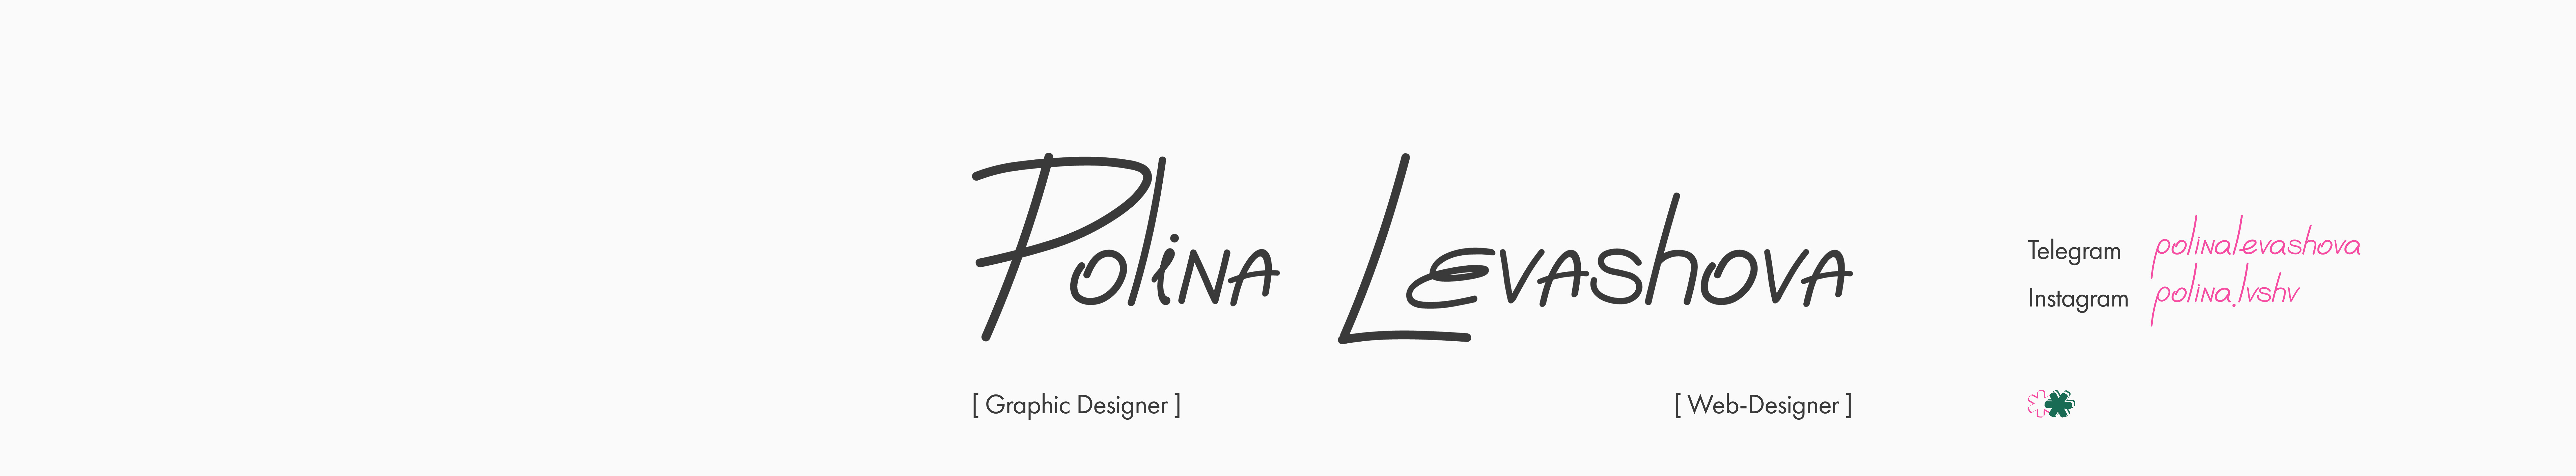 Profil-Banner von Polina Levashova